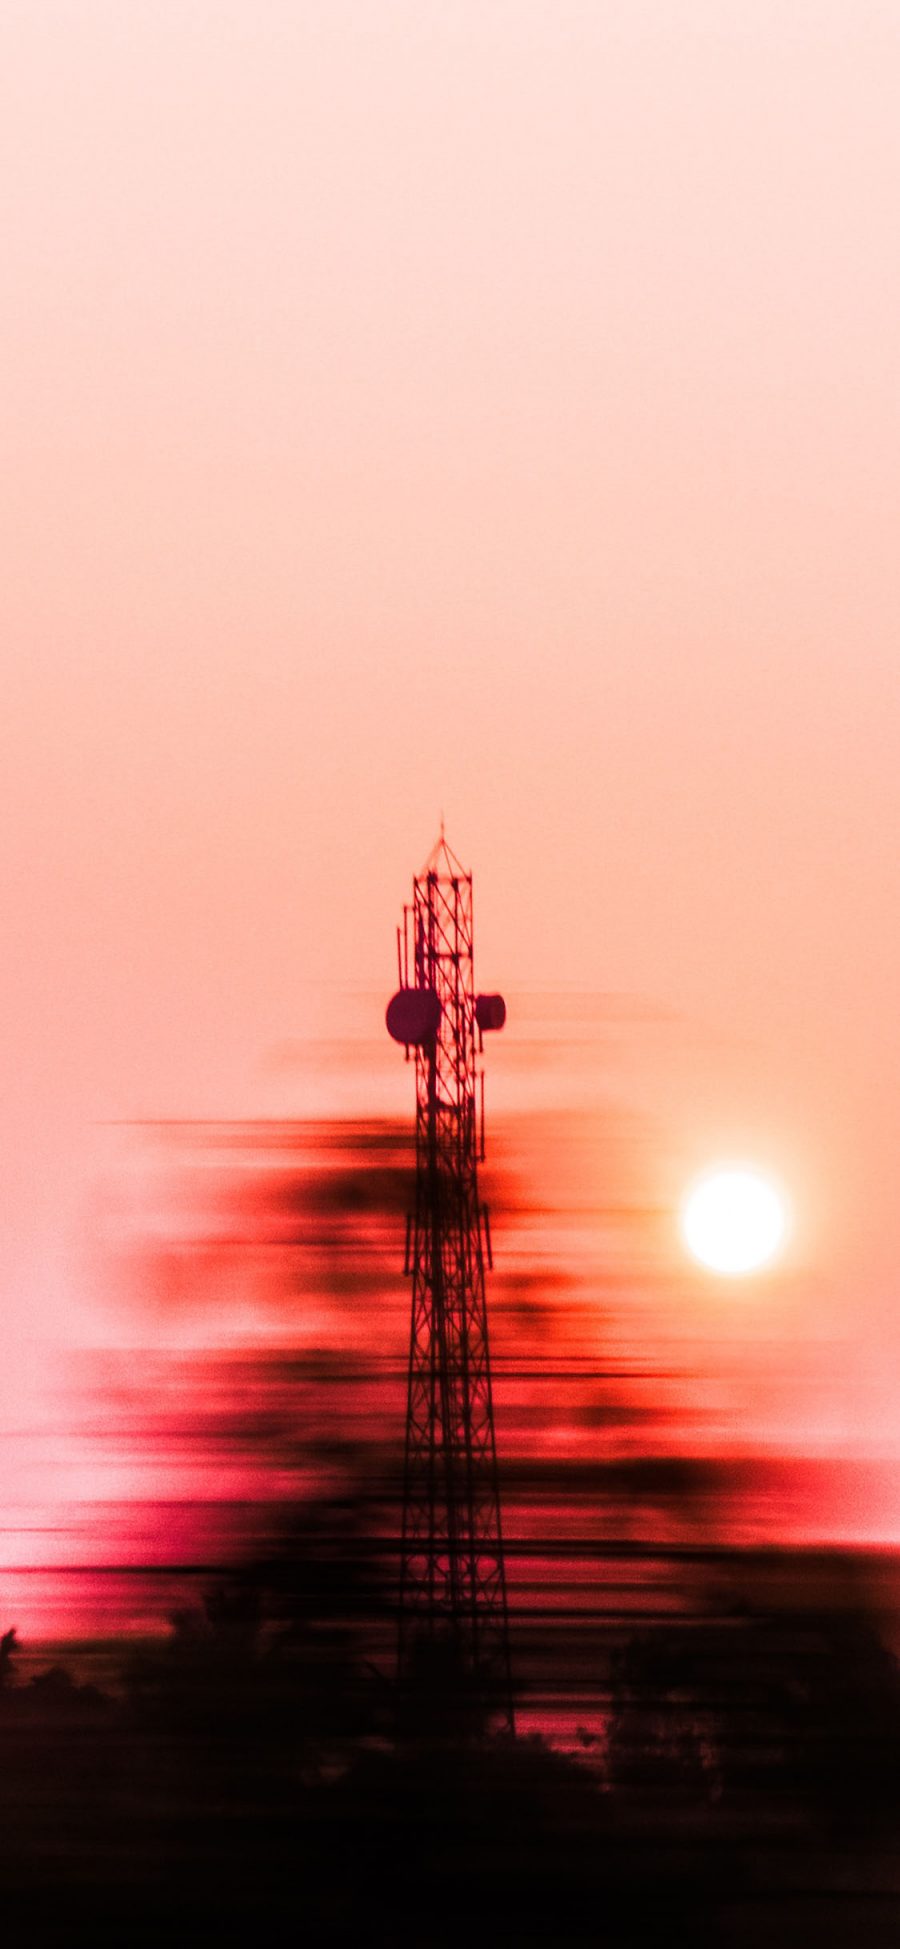 [2436×1125]信号塔 模糊 夕阳 美景 苹果手机壁纸图片